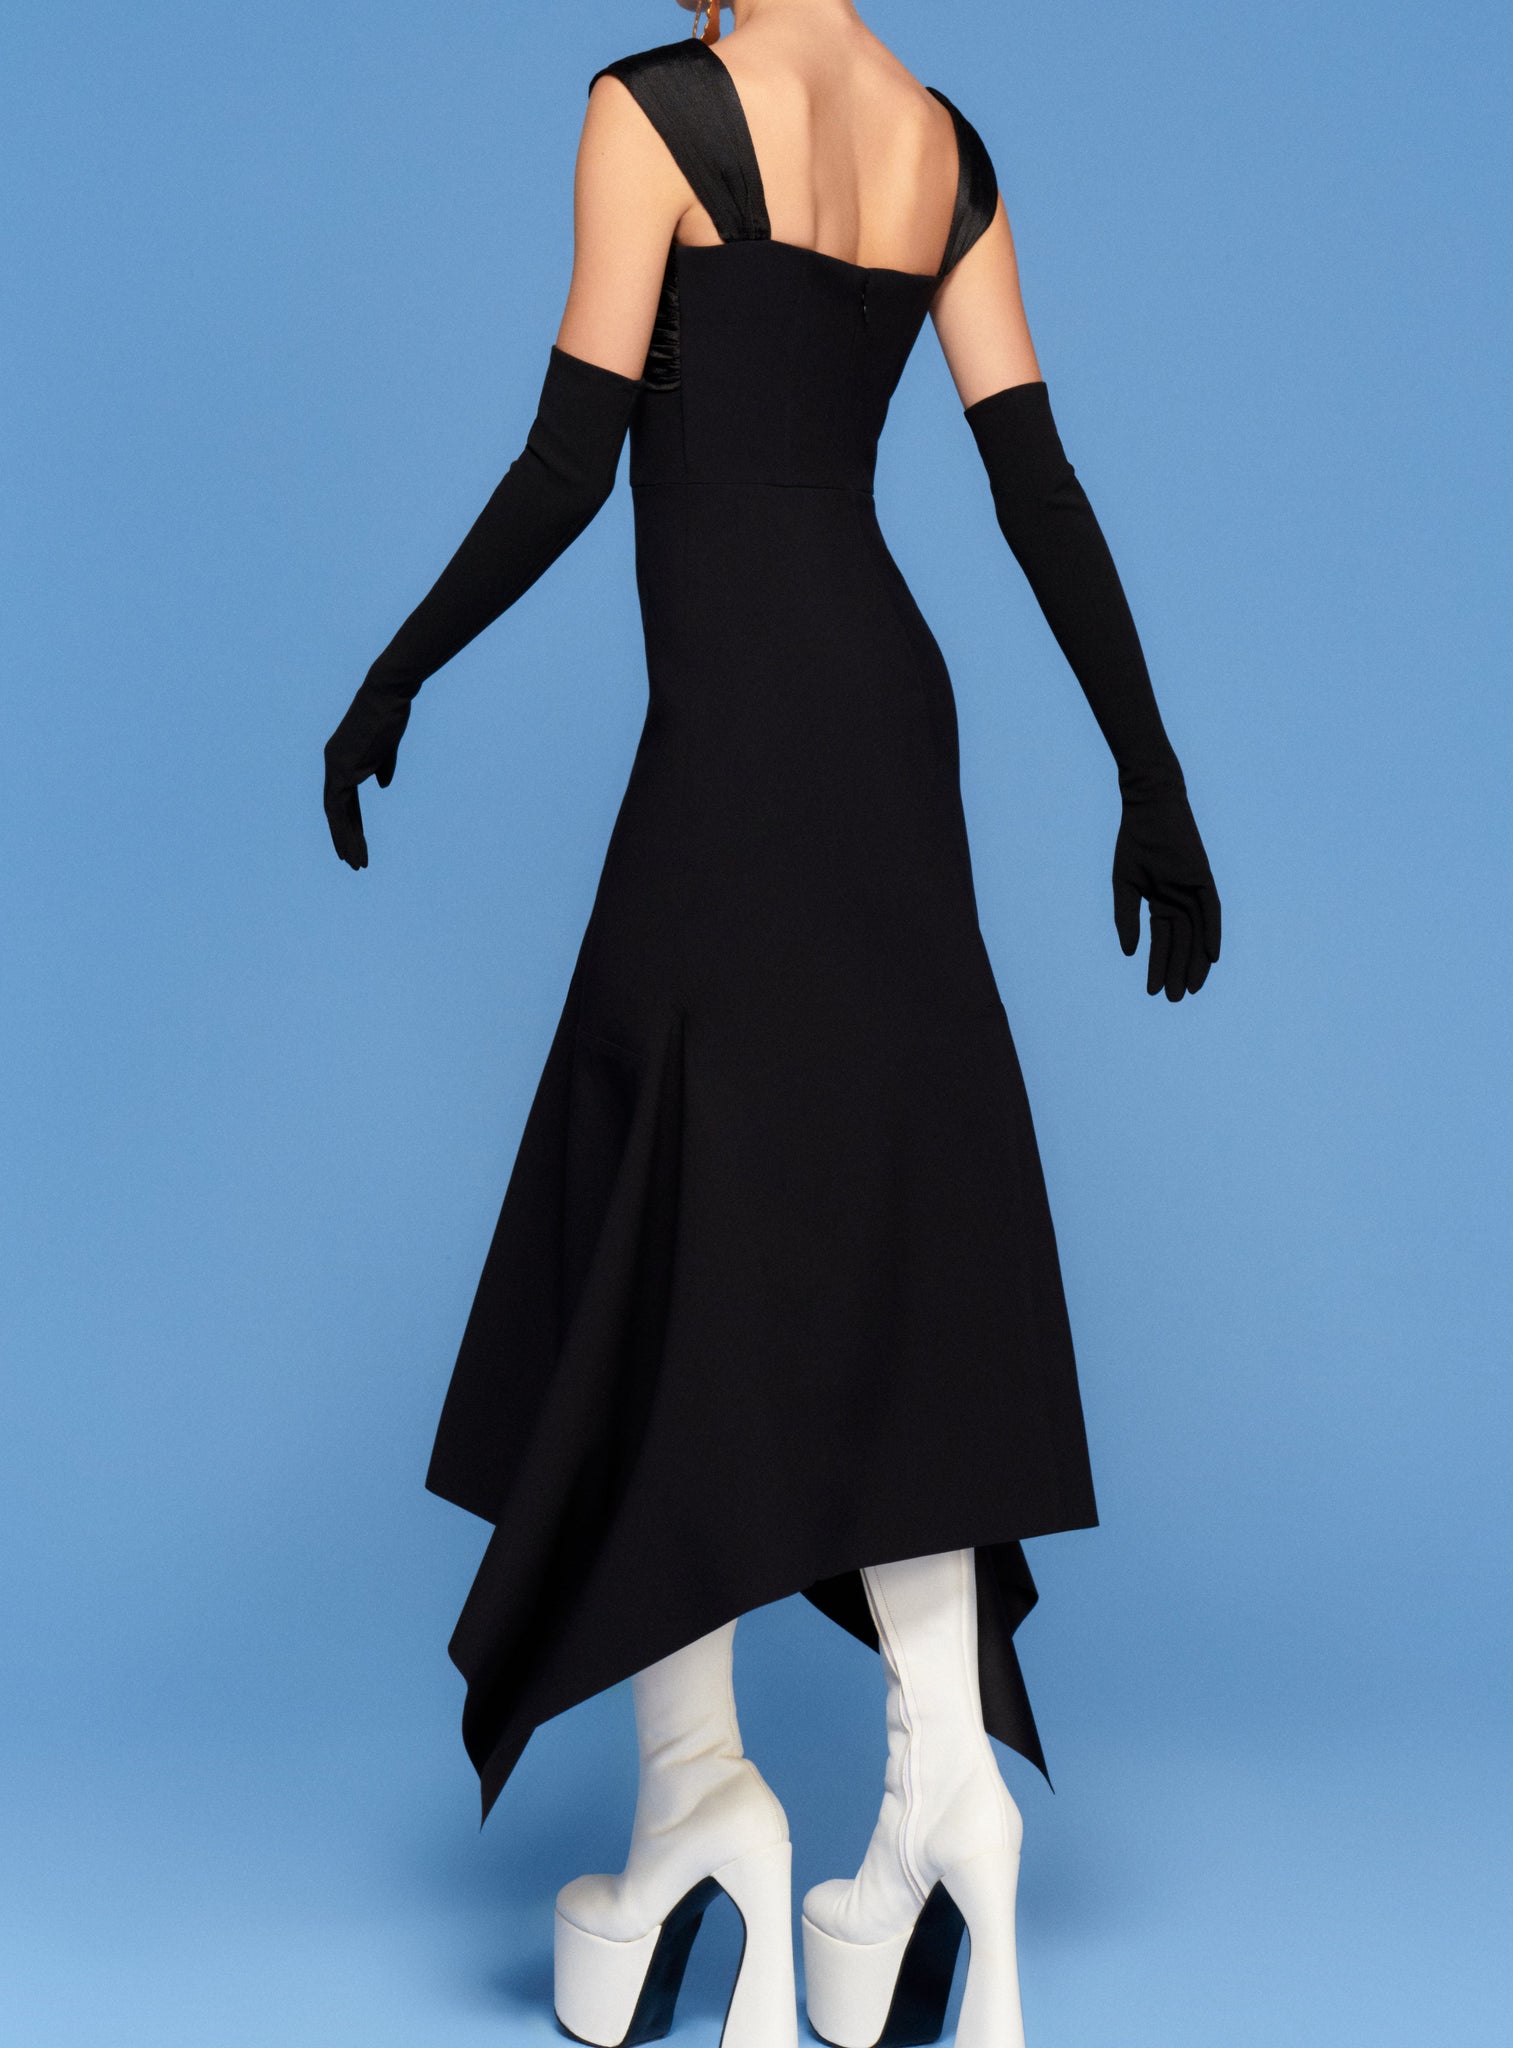 The Dahlia Midi Dress in Black